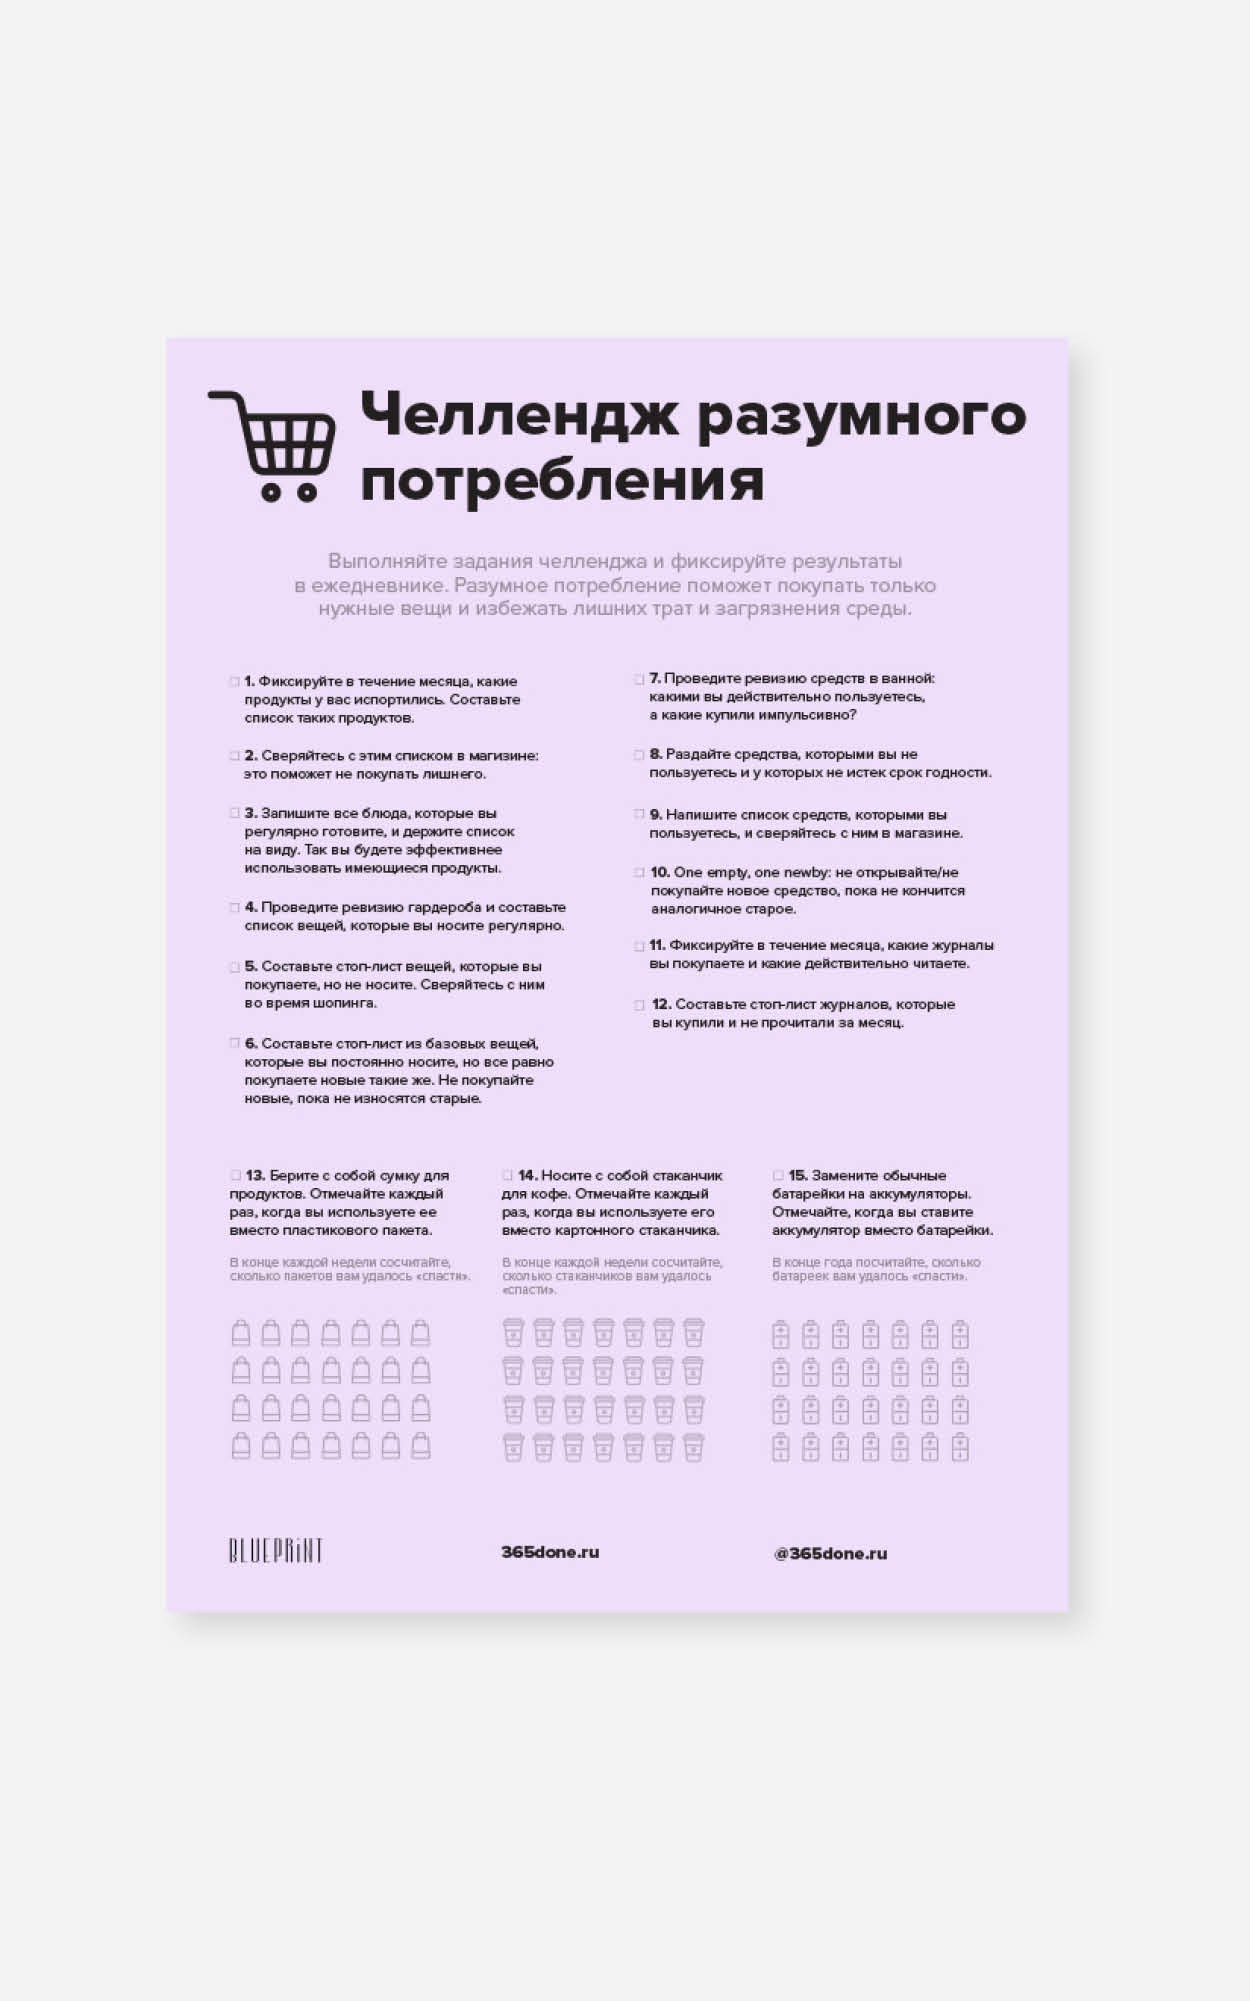 Мы сделали чеклист с 365done.ru. Он поможет начать покупать осознанно